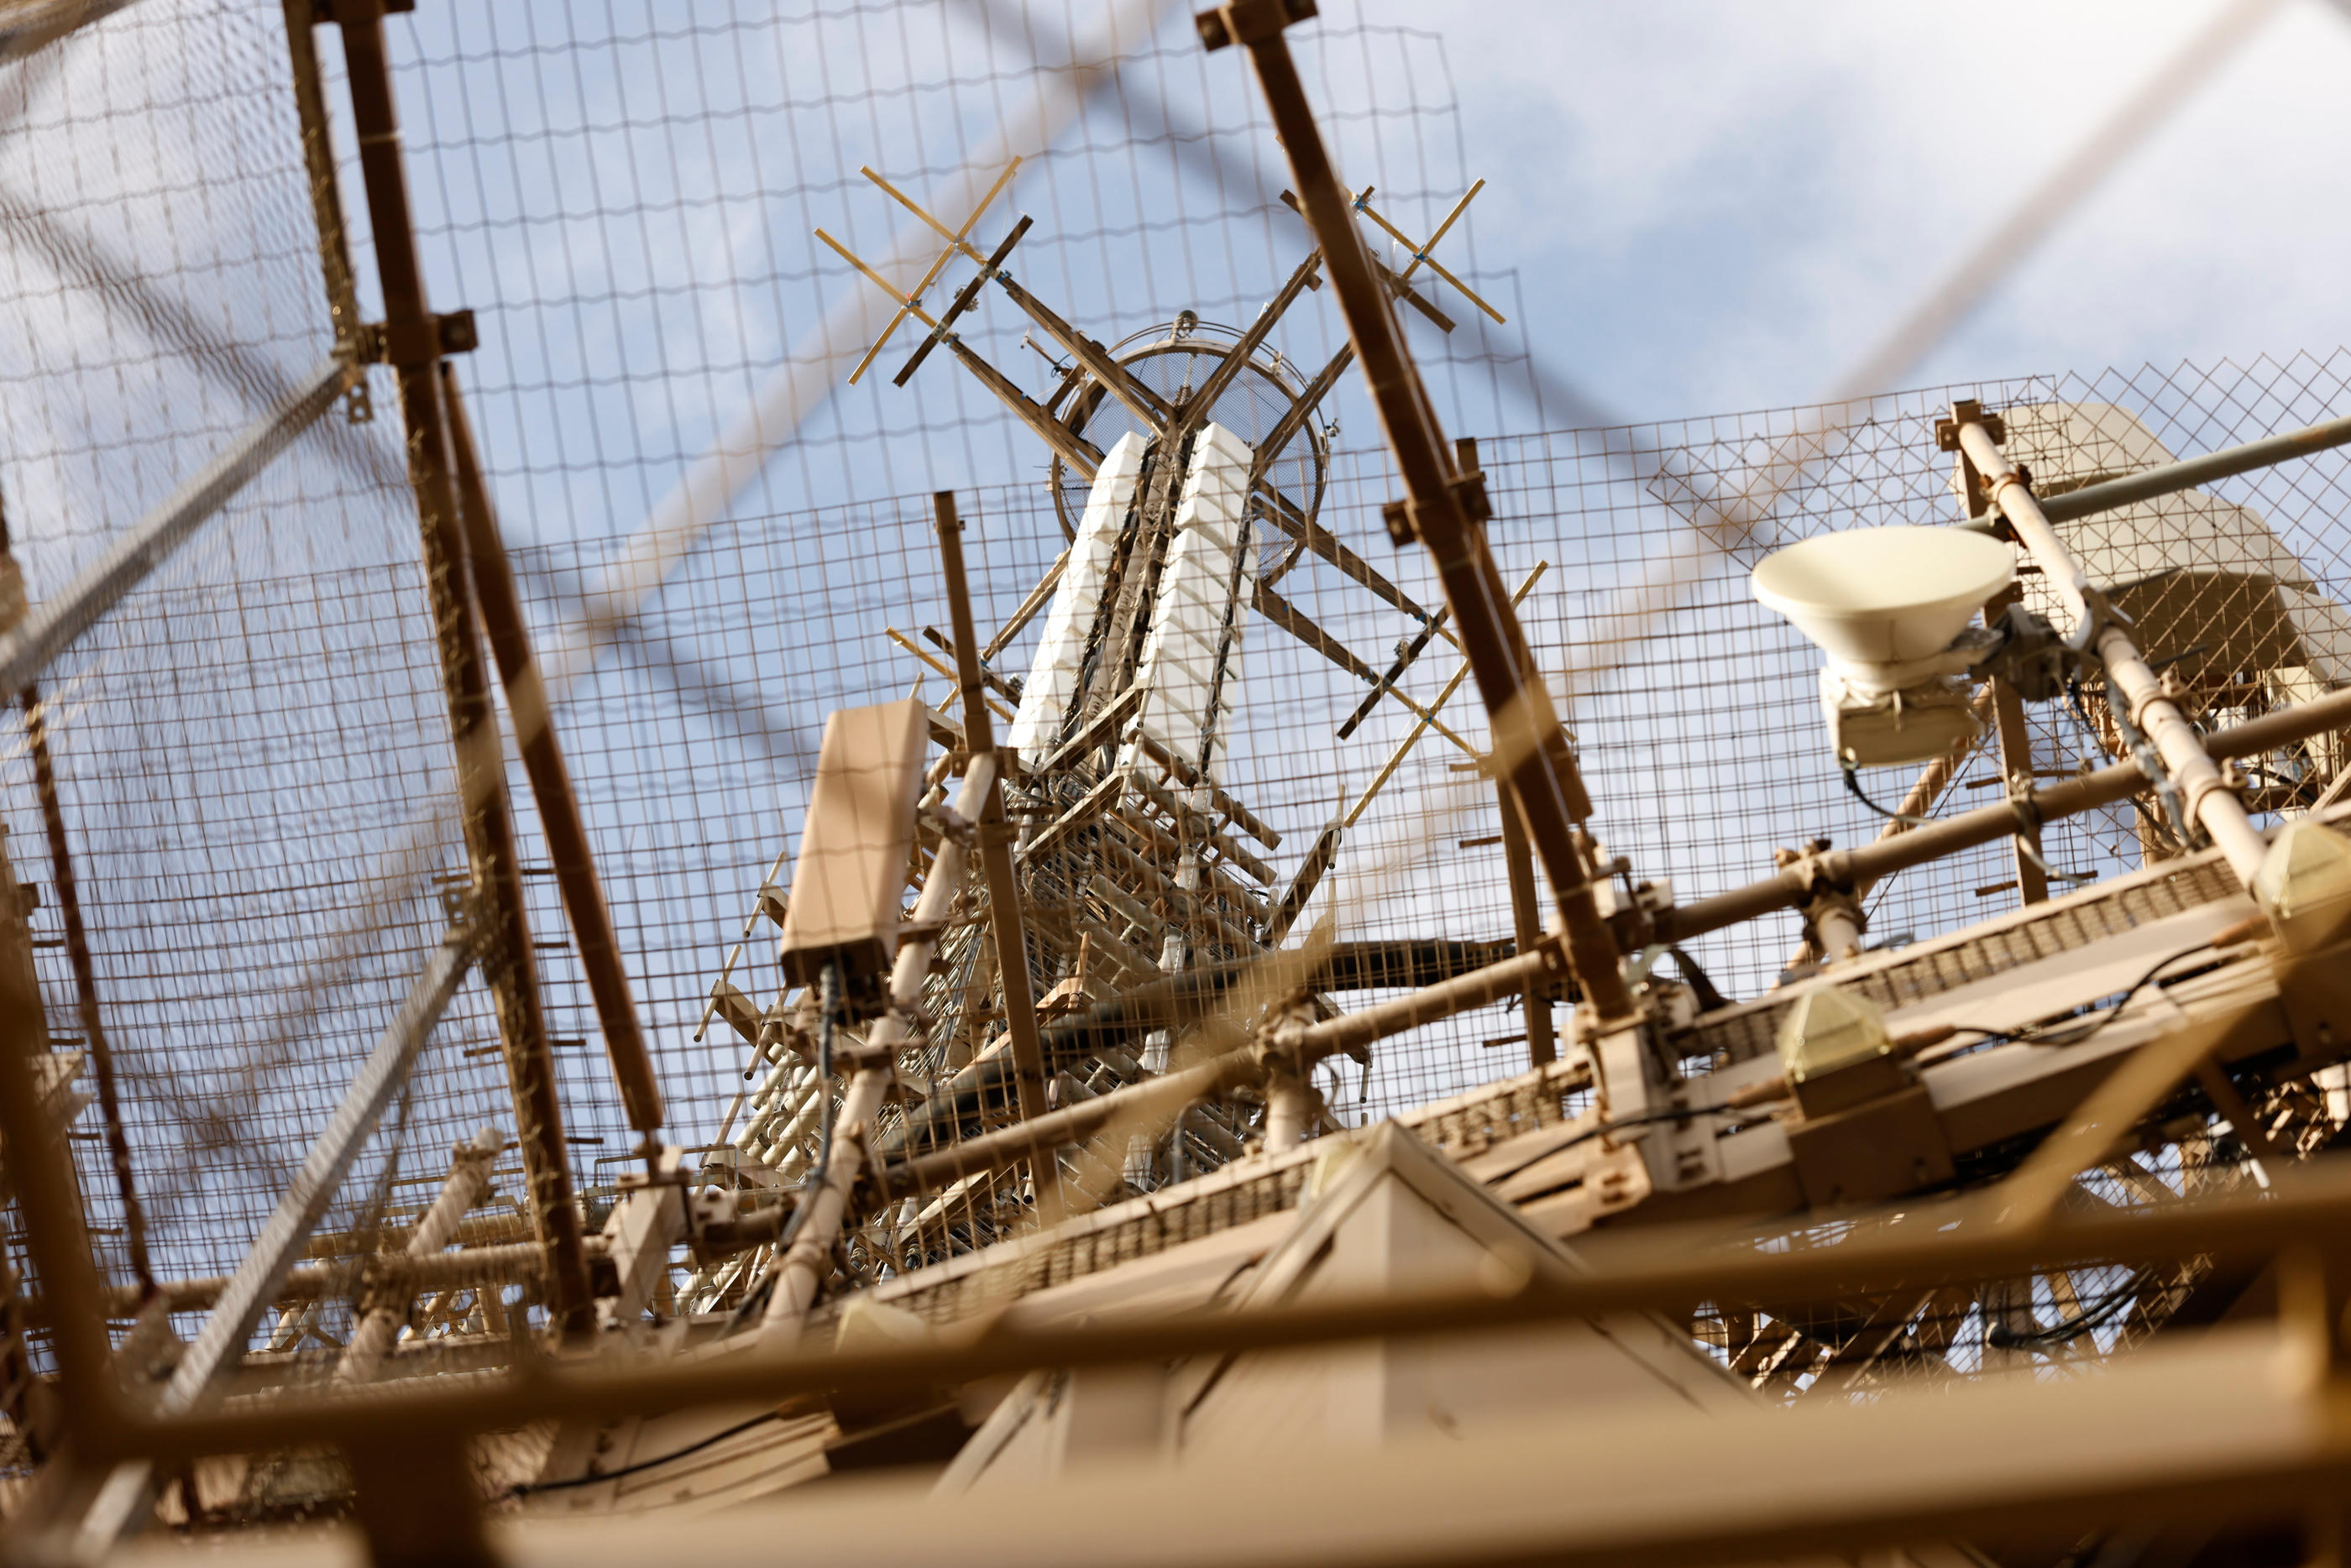 Le complexe assemblage des antennes s'étend sur 40 m de haut, au-dessus de la tête des touristes. LP/Olivier Corsan